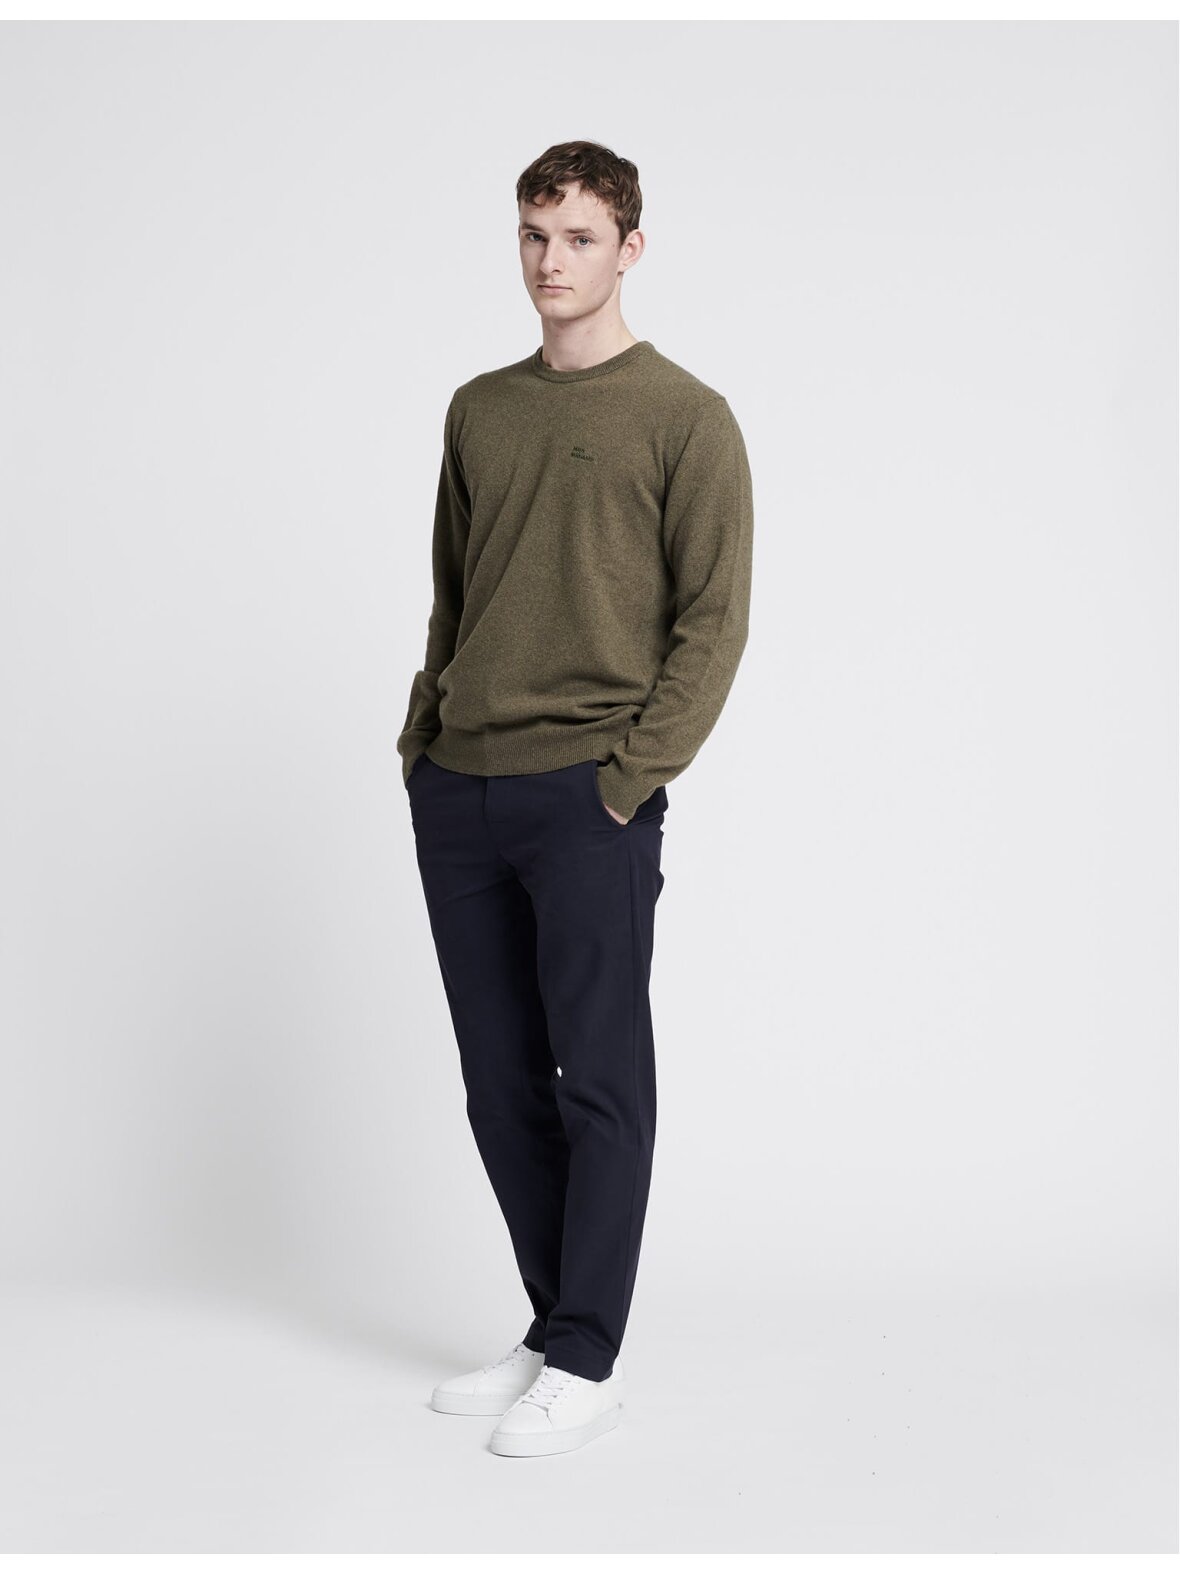 Christensen - Sweatshirt og Strik - Mads - wool